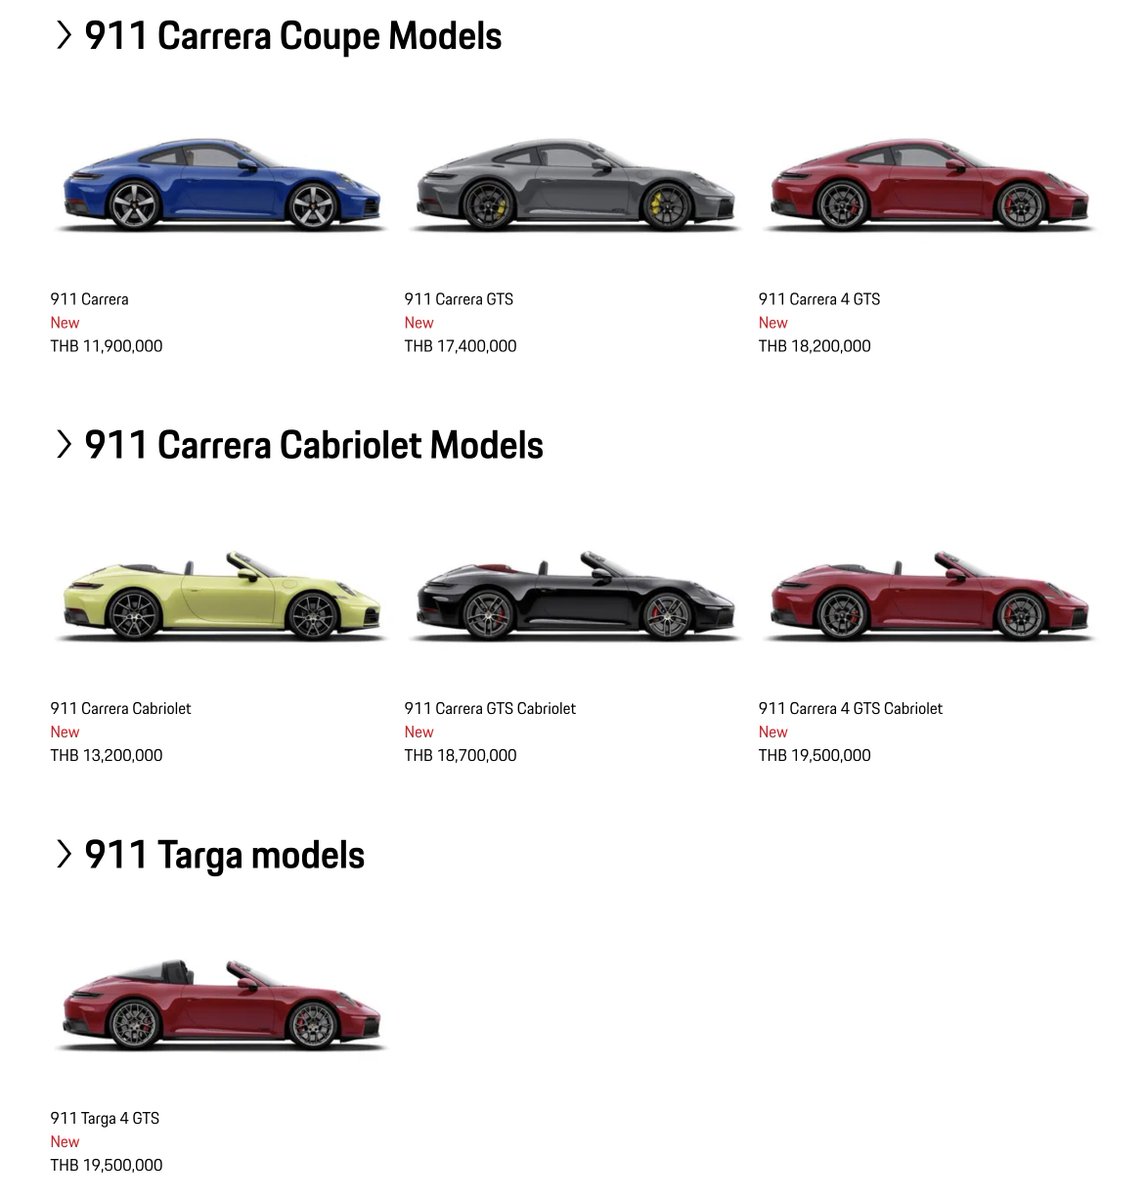 เปิดราคา Porsche 911 โฉมใหม่ (992.2) ในไทย ราคาเริ่มต้นตามนี้ครับ 911 Base - 11.9 ล้าน GTS - 17.4 ล้าน 4 GTS - 18.2 ล้าน Cabriolet - 13.2 ล้าน GTS Cabriolet - 18.7 ล้าน 4 GTS Cabriolet - 19.5 ล้าน Targa 4 GTS - 19.5 ล้าน เปิดราคาเริ่มต้นแพงขึ้นทุกตัว บางตัวแพงขึ้นหลายล้านเลย